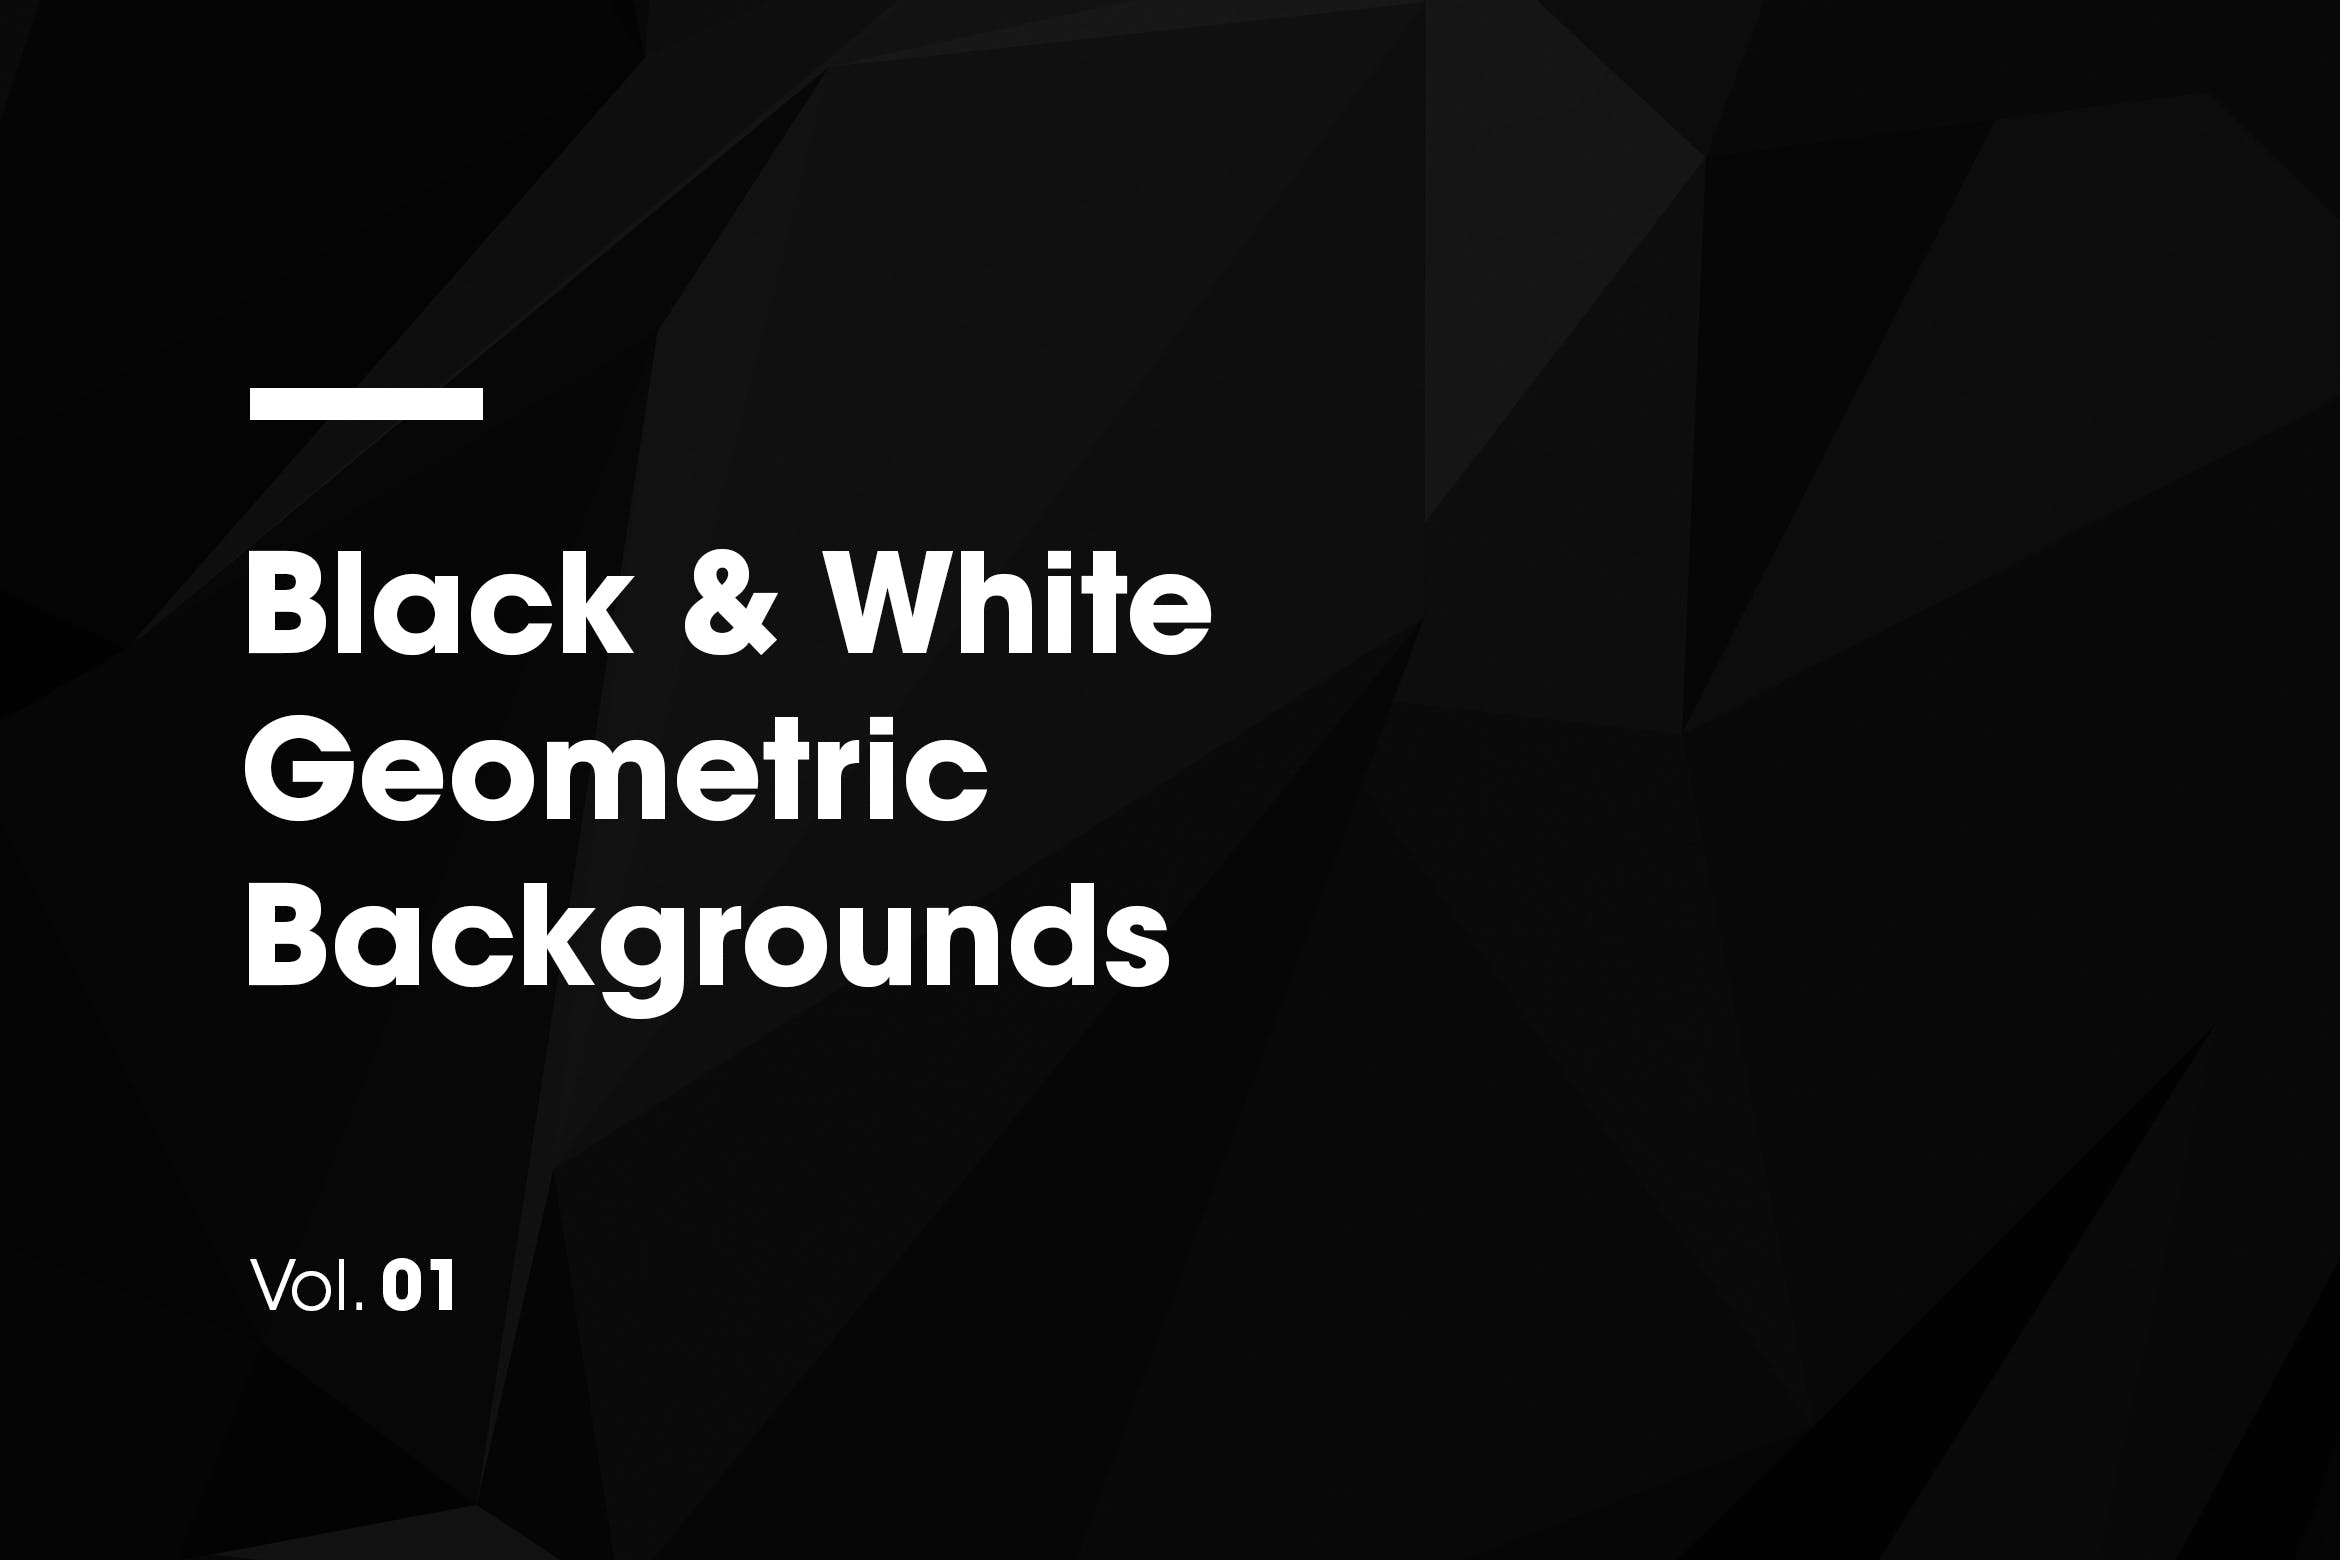 黑白风格几何图形高清背景图素材 Black & White | Geometric Backgrounds插图